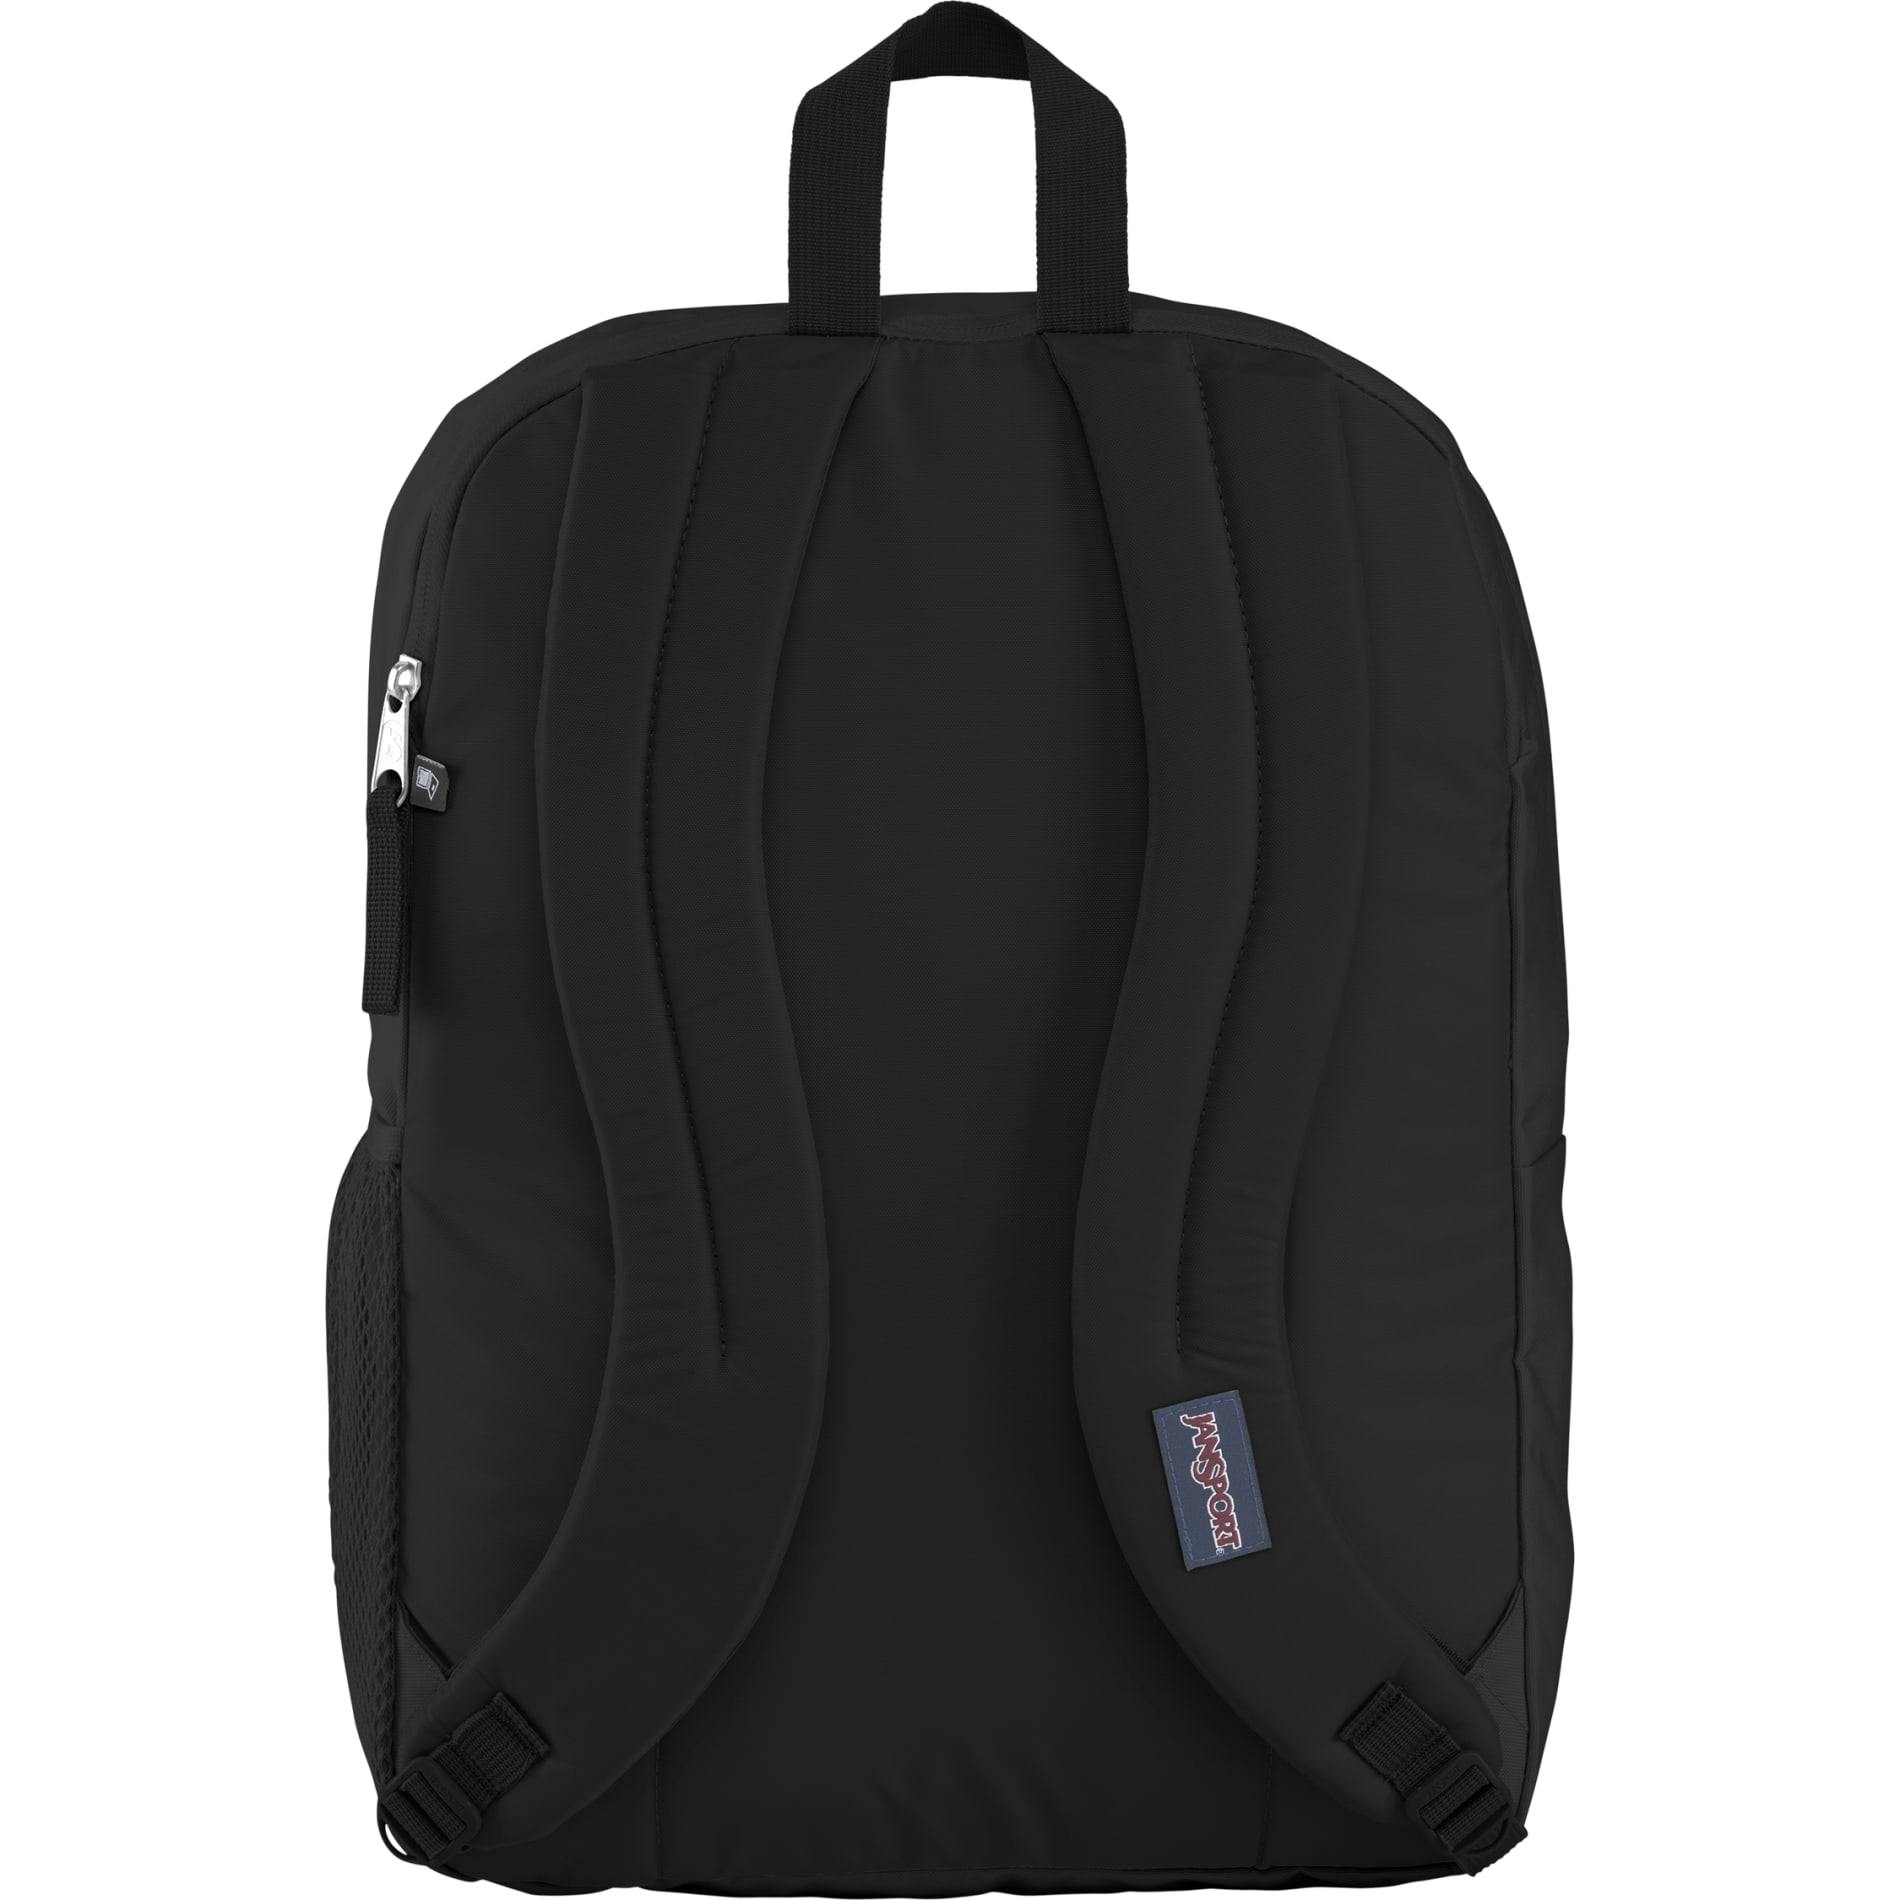 JanSport Big Student 15" Computer Backpack - additional Image 2